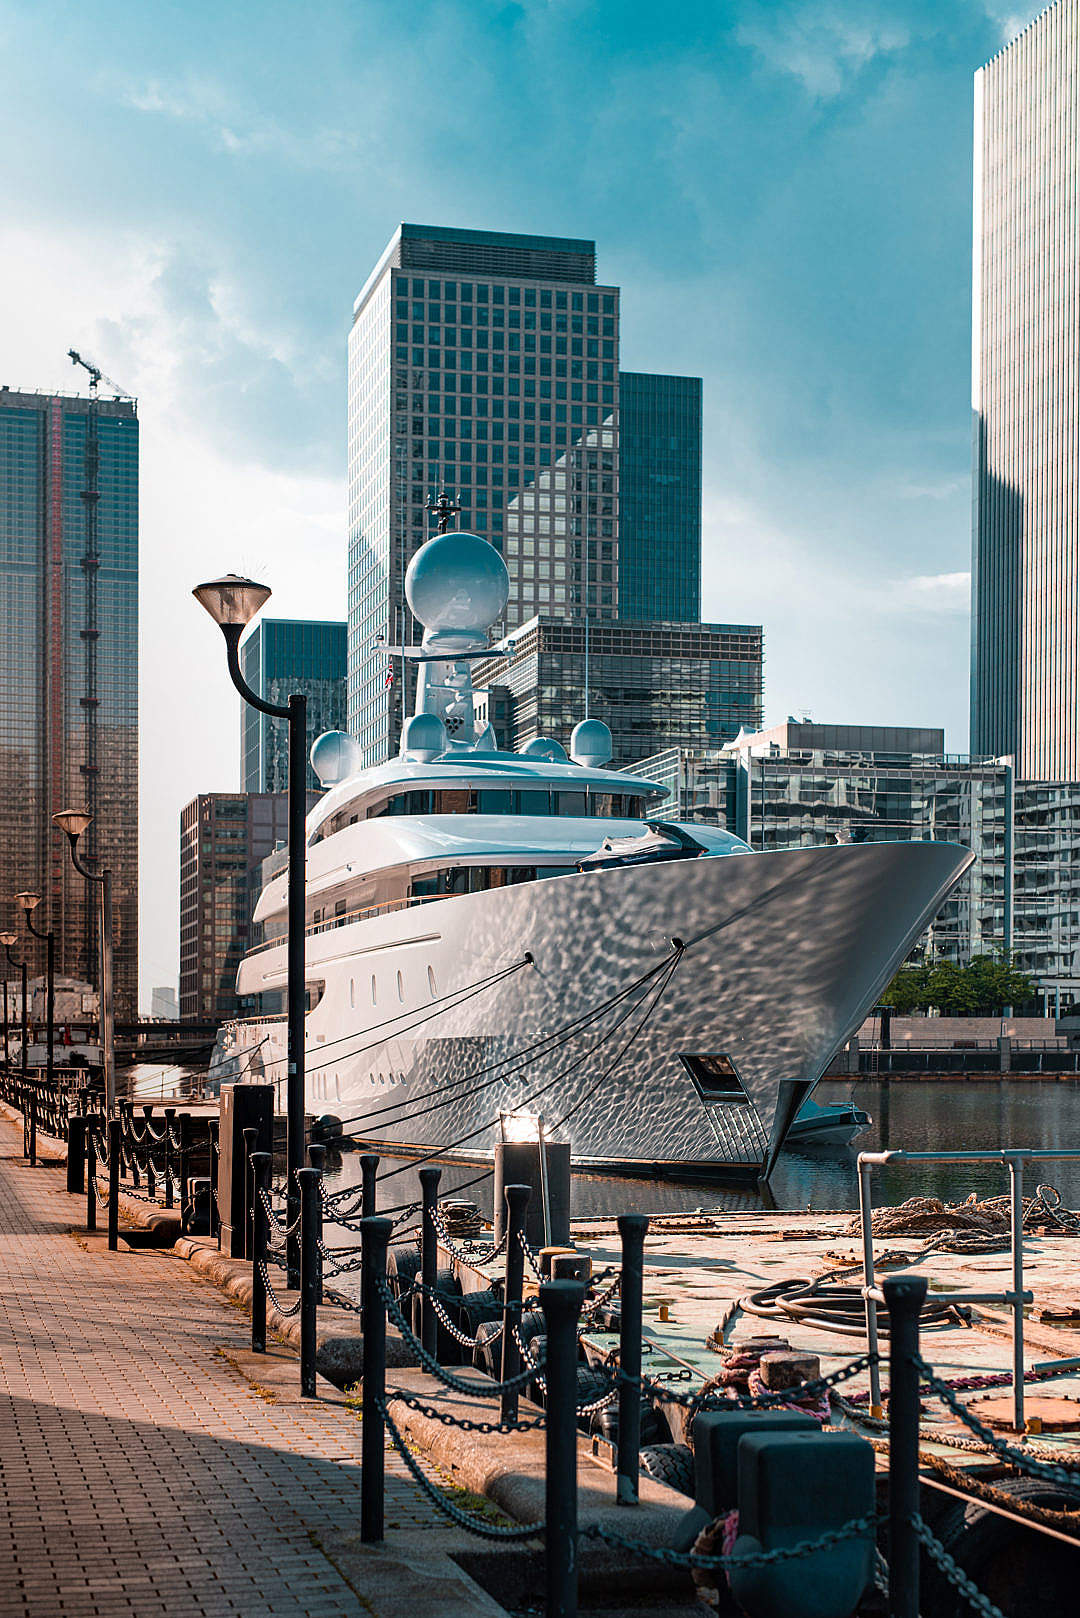 Luxury Mega Yacht in London Harbor